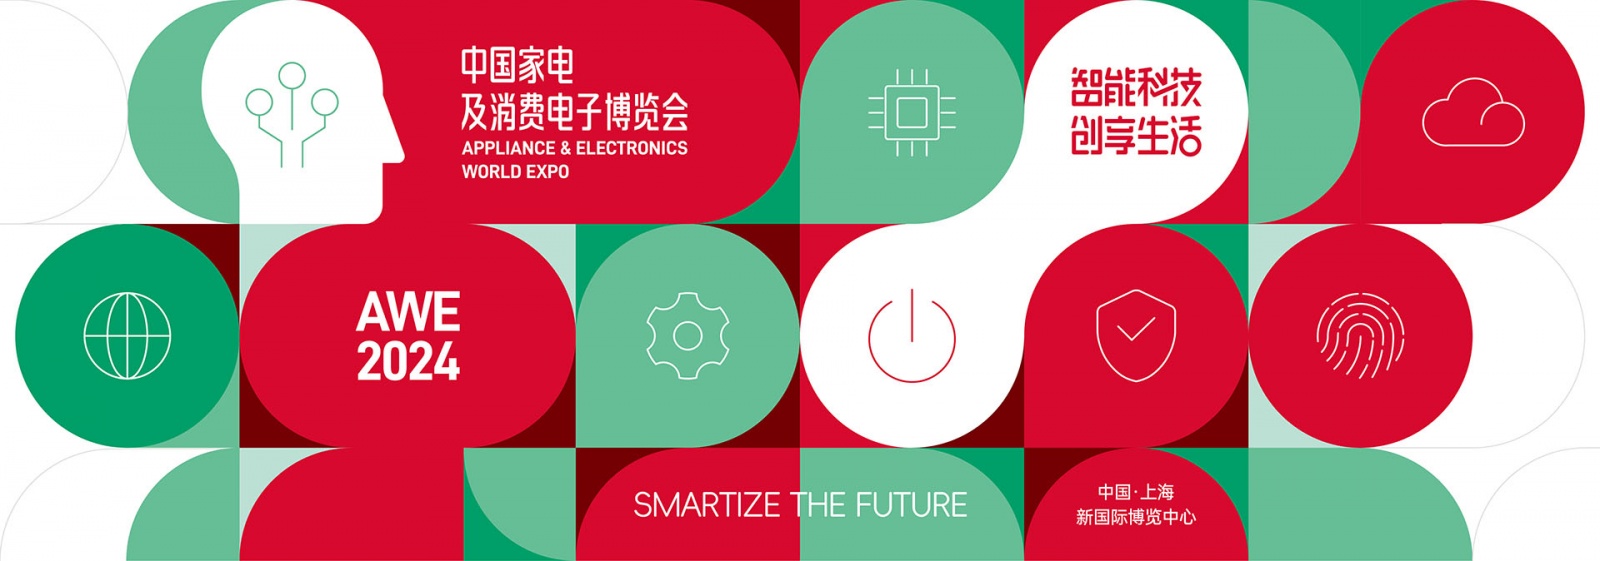 上海家电展-2024年中国家电及消费电子博览会AWE